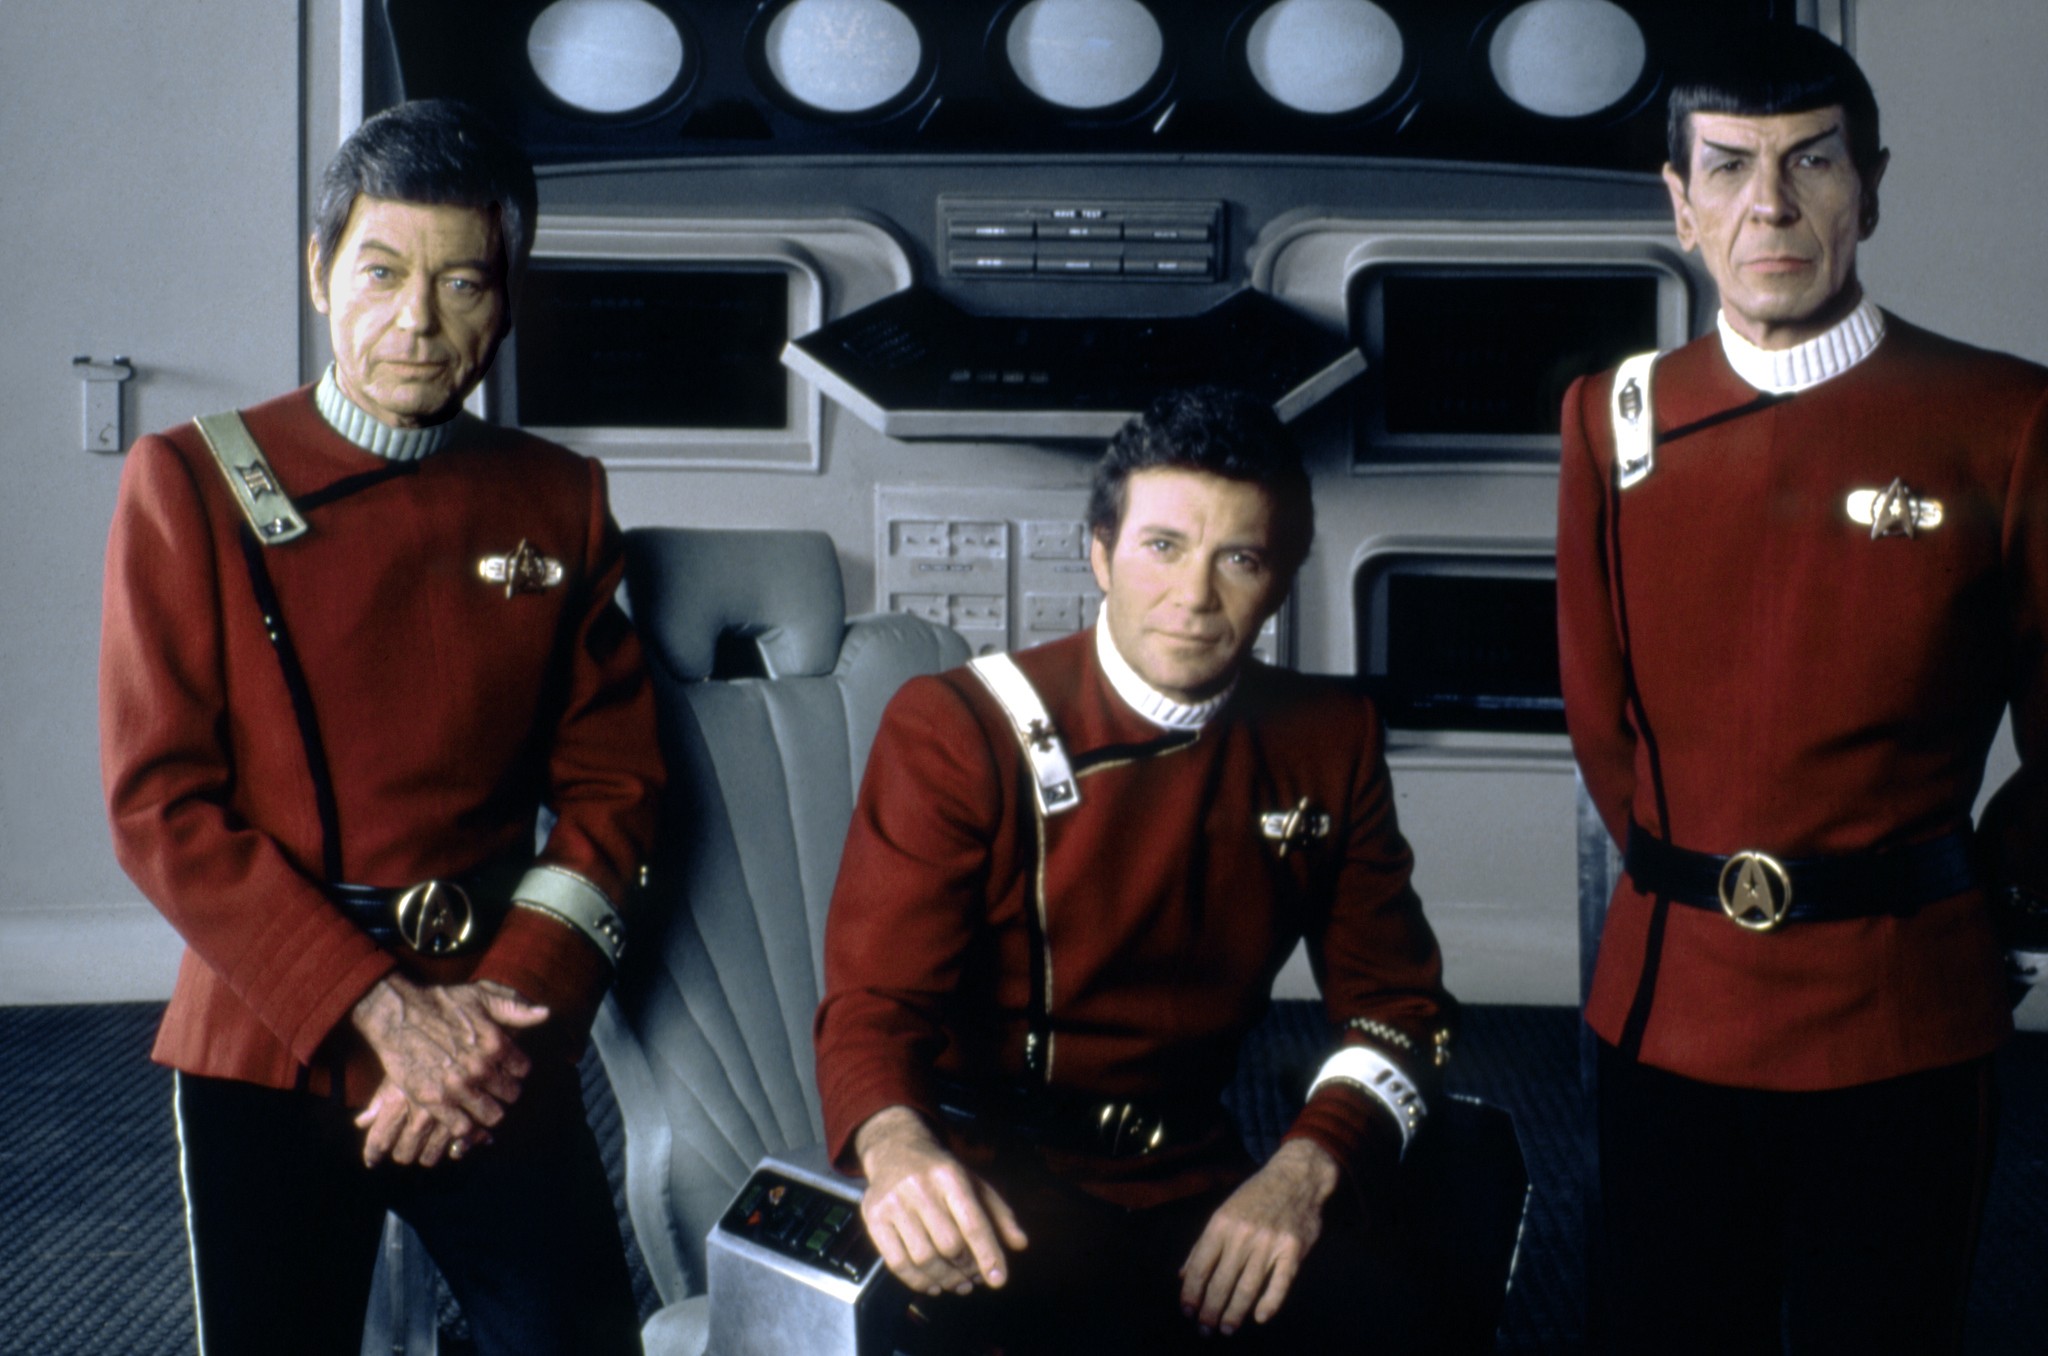 Star Trek 2: Cơn Thịnh Nộ của Khan